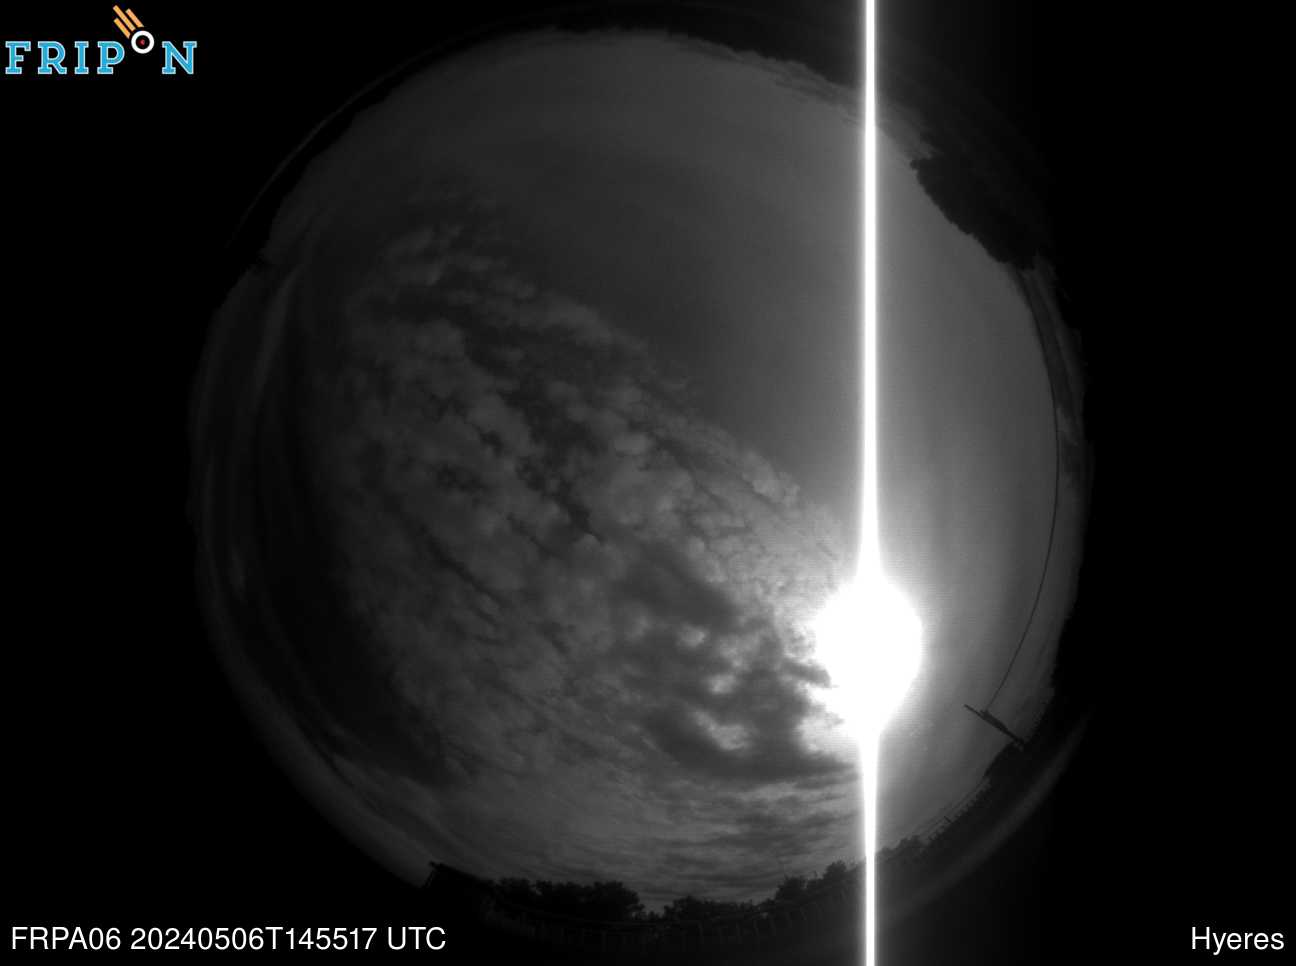 Full size image detection Observatoire du Pic des fÃ©es - Hyeres (FRPA06) Universal Time